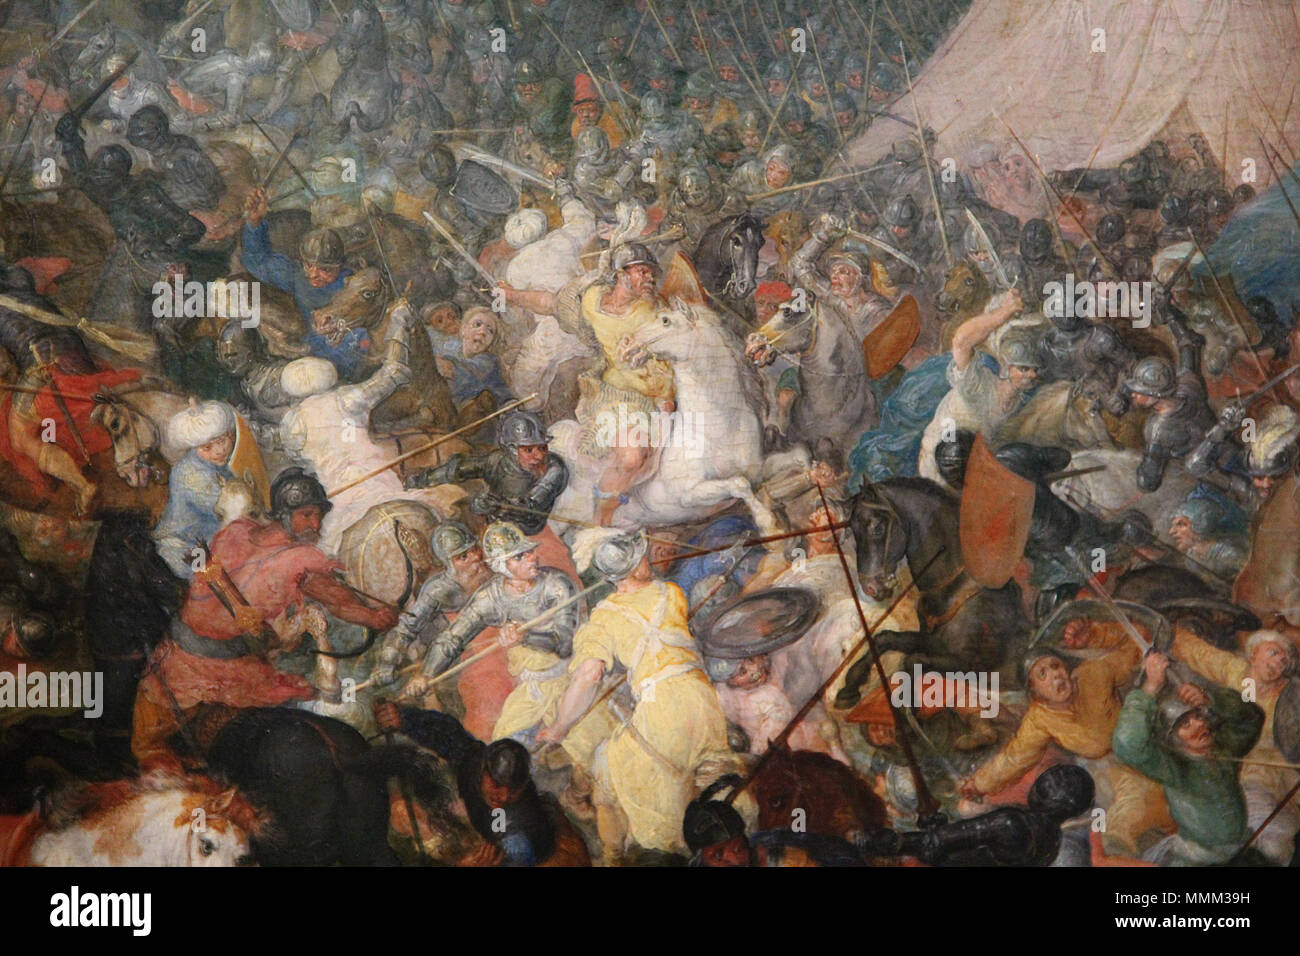 "La bataille d'Issos ou d'Arbelles" (détail), huile sur bois (et mépris. 86,5 cm ; largeur. 135,5 cm) de Jan Brueghel l'Ancien (1610), appartenant au Louvre. - Inv. 1094, photographiée lors de l'exposition temporaire " Rubens et son temps au musée du Louvre-Lens. "La bataille d'Issos ou d'Arbelles" (détail), huile sur bois (et mépris. 86,5 cm ; largeur. 135,5 cm) de Jan Brueghel l'Ancien (1610), appartenant au Louvre. - Inv. 1094, photographiée lors de l'exposition temporaire " Rubens et son temps au musée du Louvre-Lens. 0 La Bataille d'Issos - Jan Brueghel l'Ancien (détail) Banque D'Images